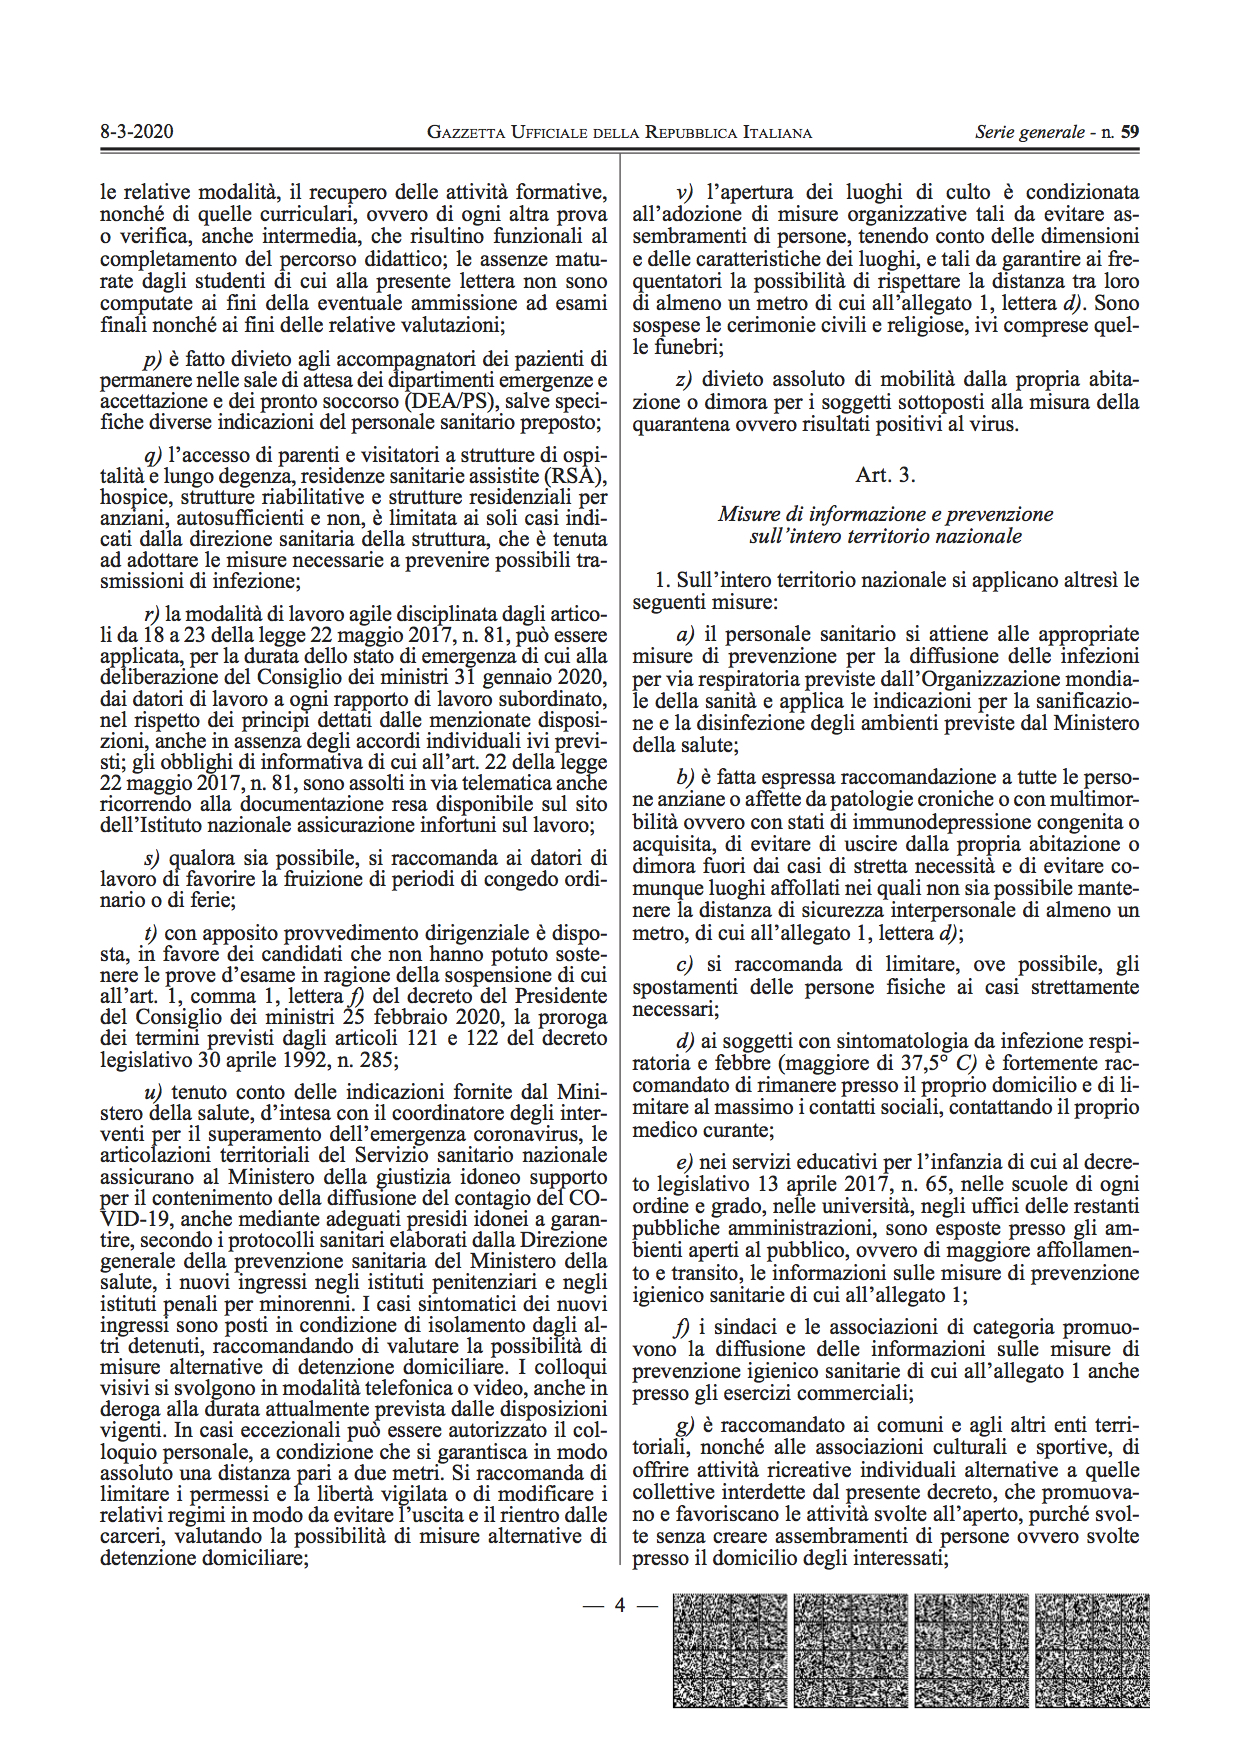 Gazzetta Ufficiale – Serie Generale n. 59 del 8-3-2020, Decreti Presidenziali: Decreto del Presidente del Consiglio dei Ministri, 8 marzo 2020